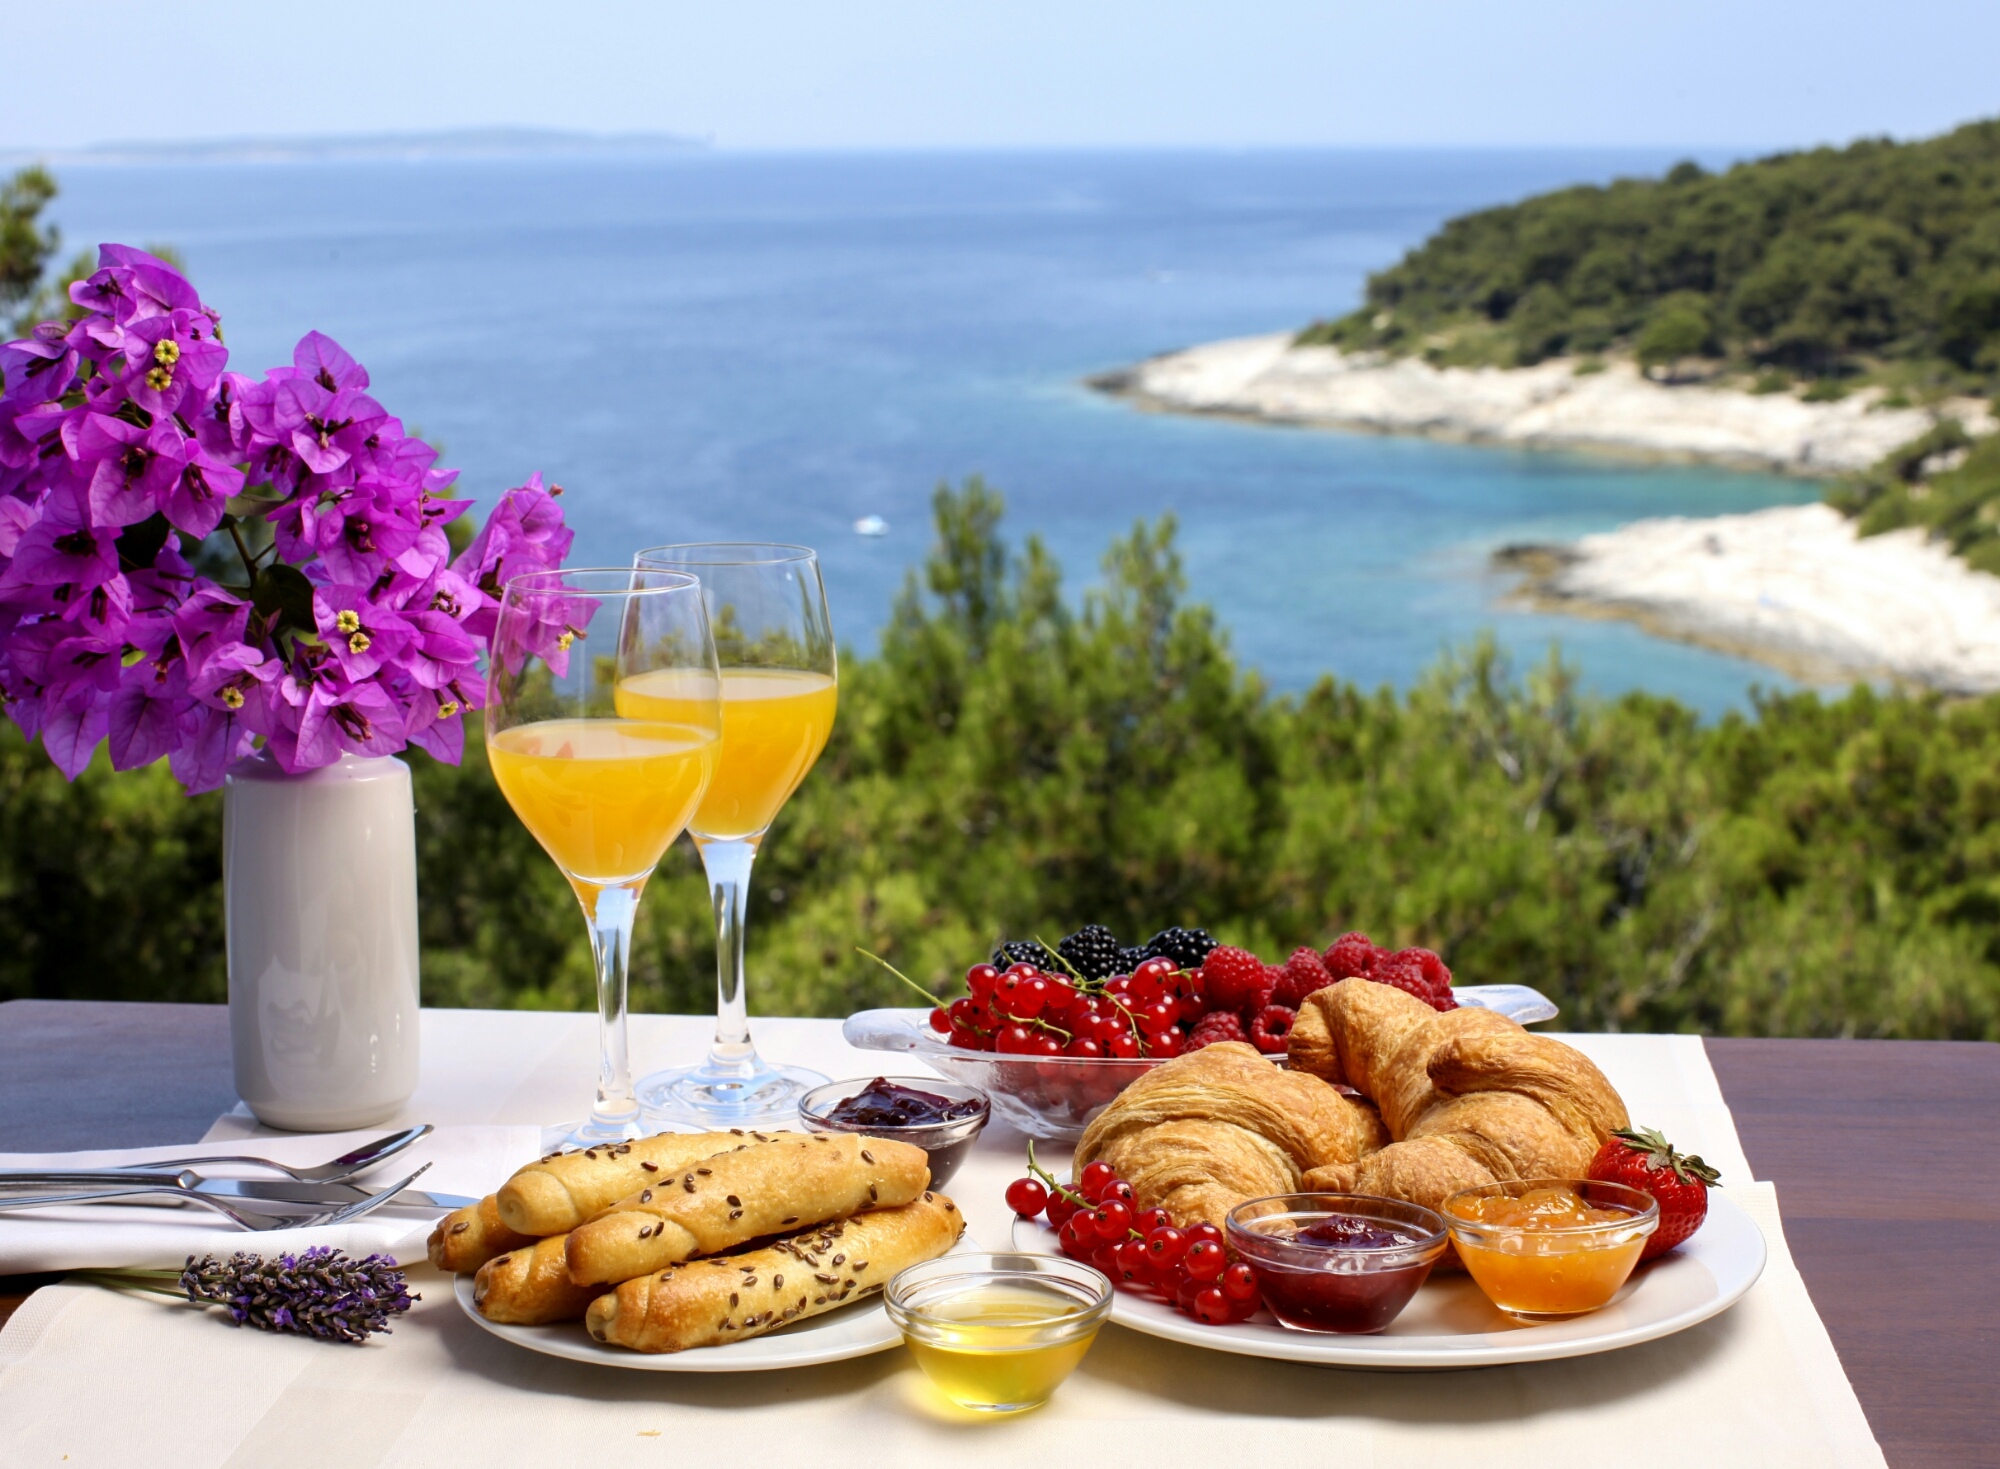 Беречь завтрак. Завтрак с видом на море. Столик с видом на море. Столик у моря. Красивый завтрак с видом.